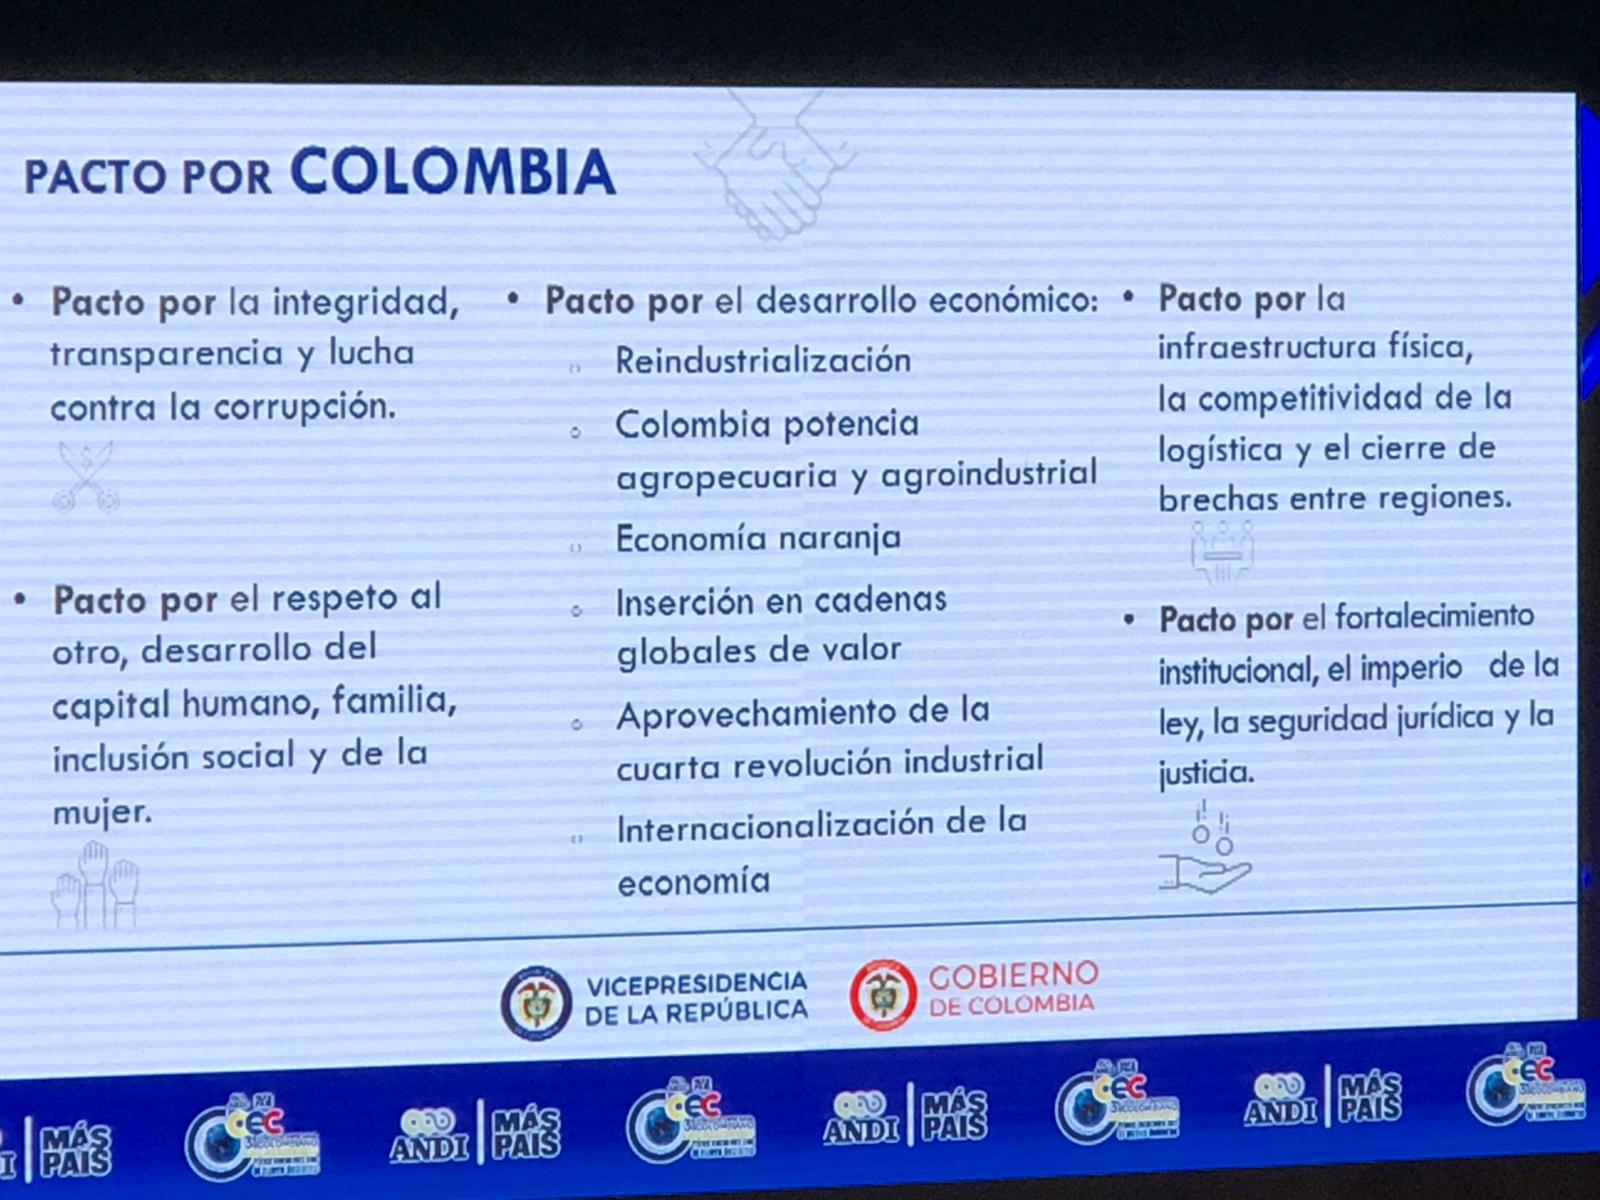  - El pacto por Colombia que arrancó aplausos en la ANDI